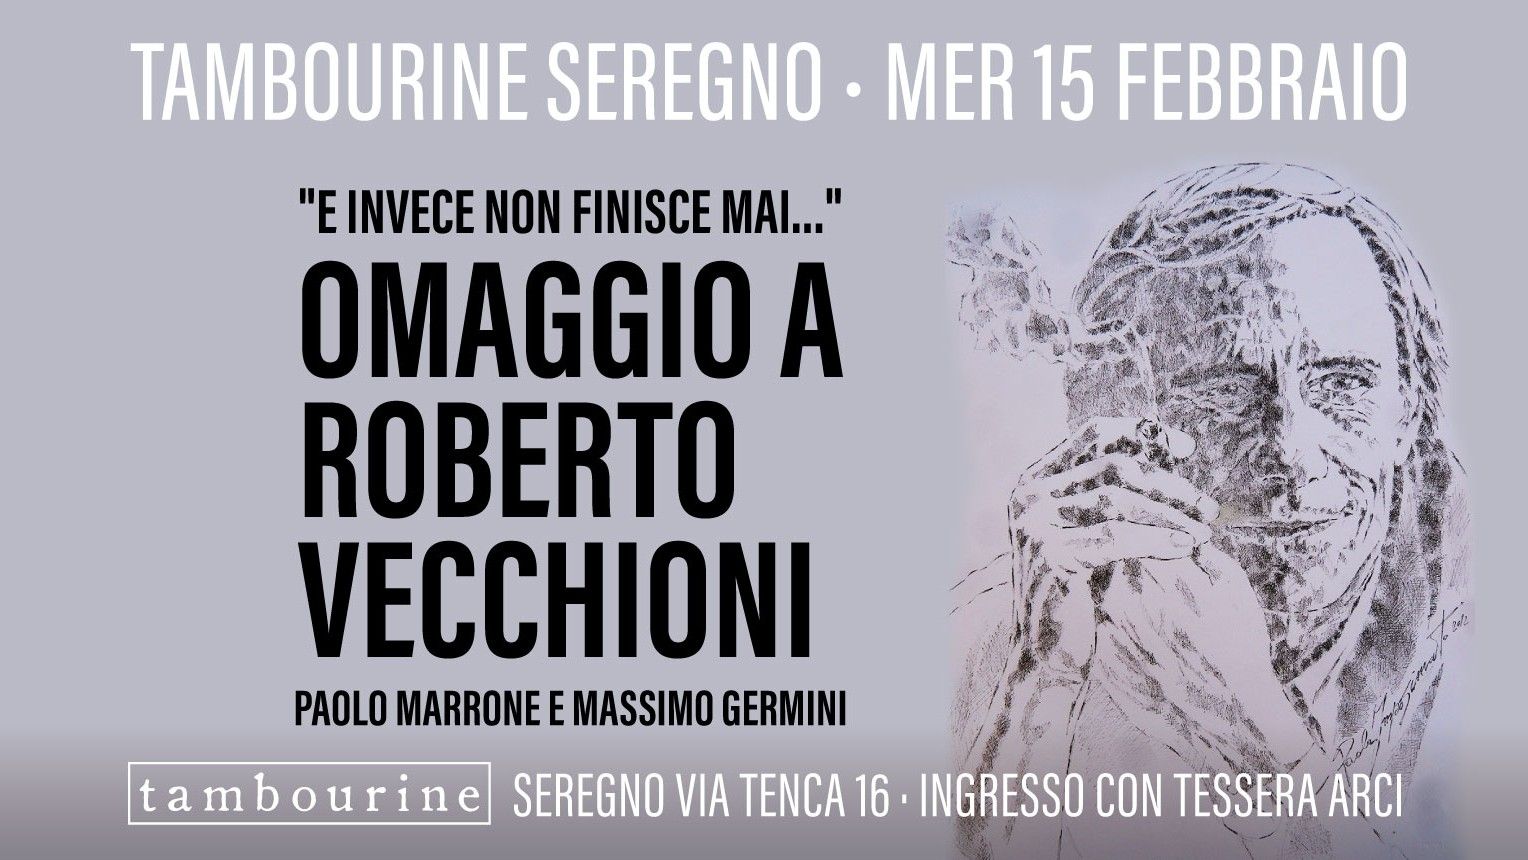 Omaggio A Vecchioni - Paolo Marrone e Massimo Germini